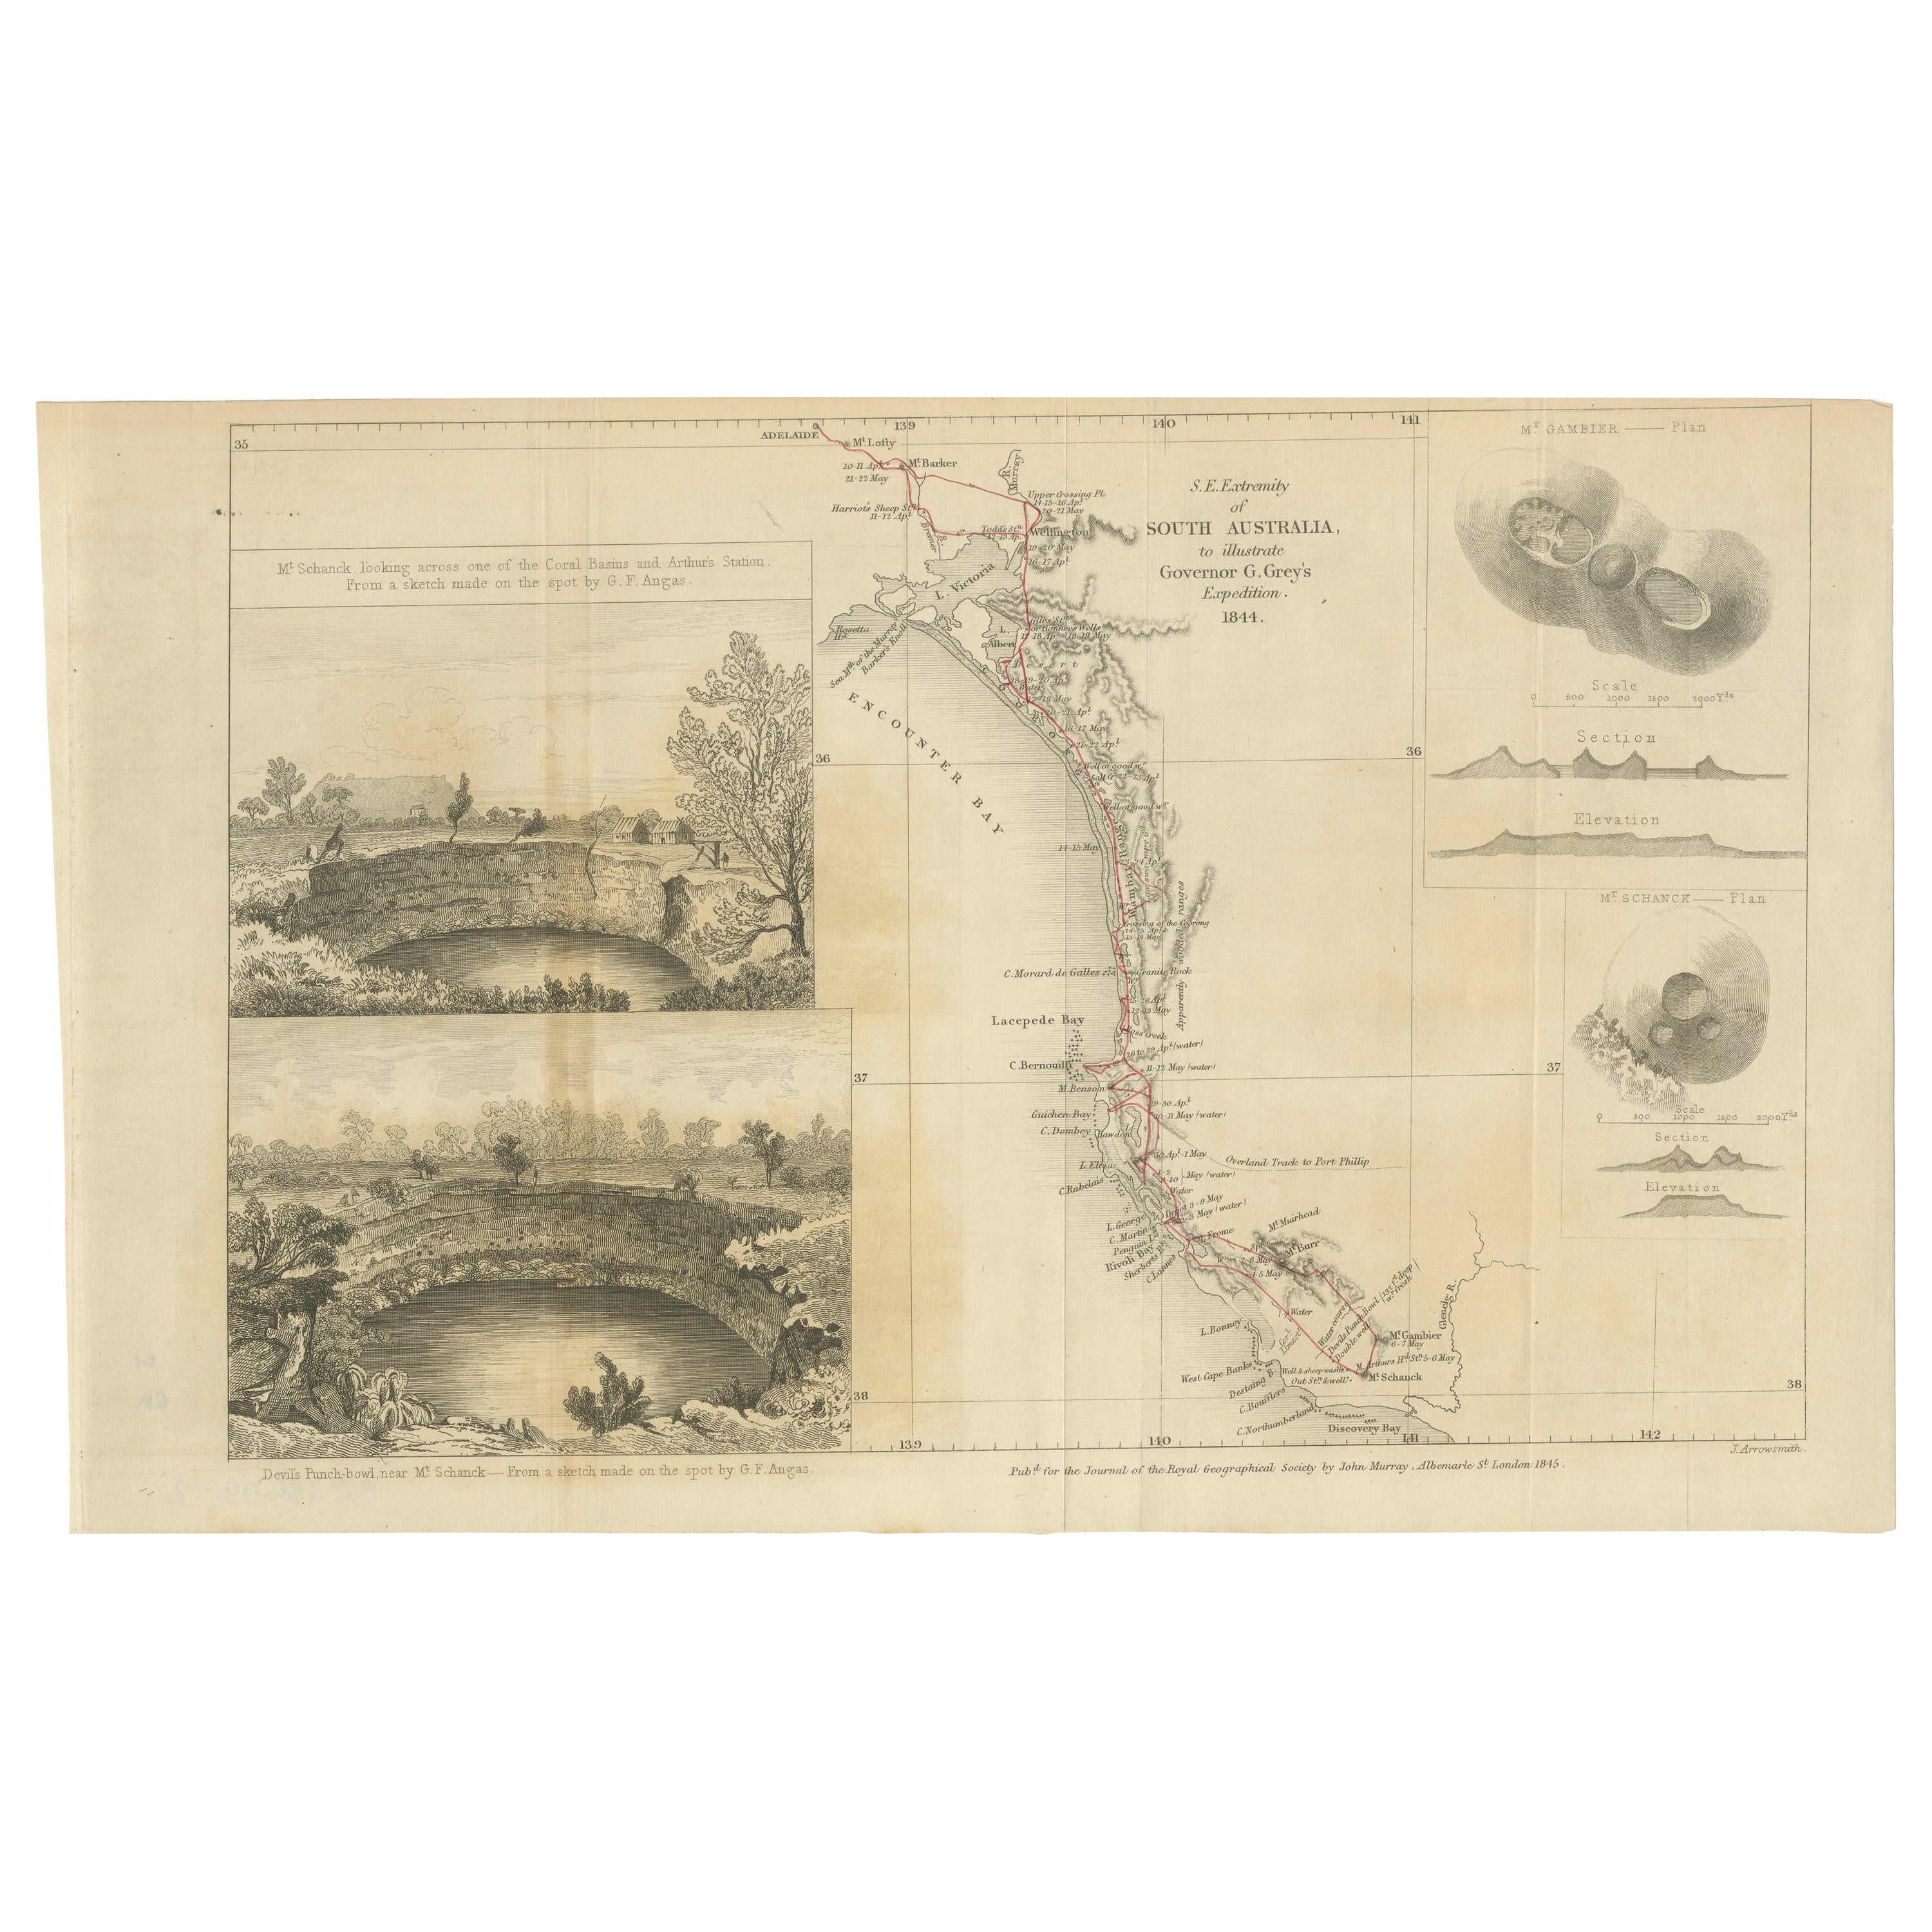 Die Durchquerung der vulkanischen Grenze: Eine südaustralische Expedition von 1844 im Angebot